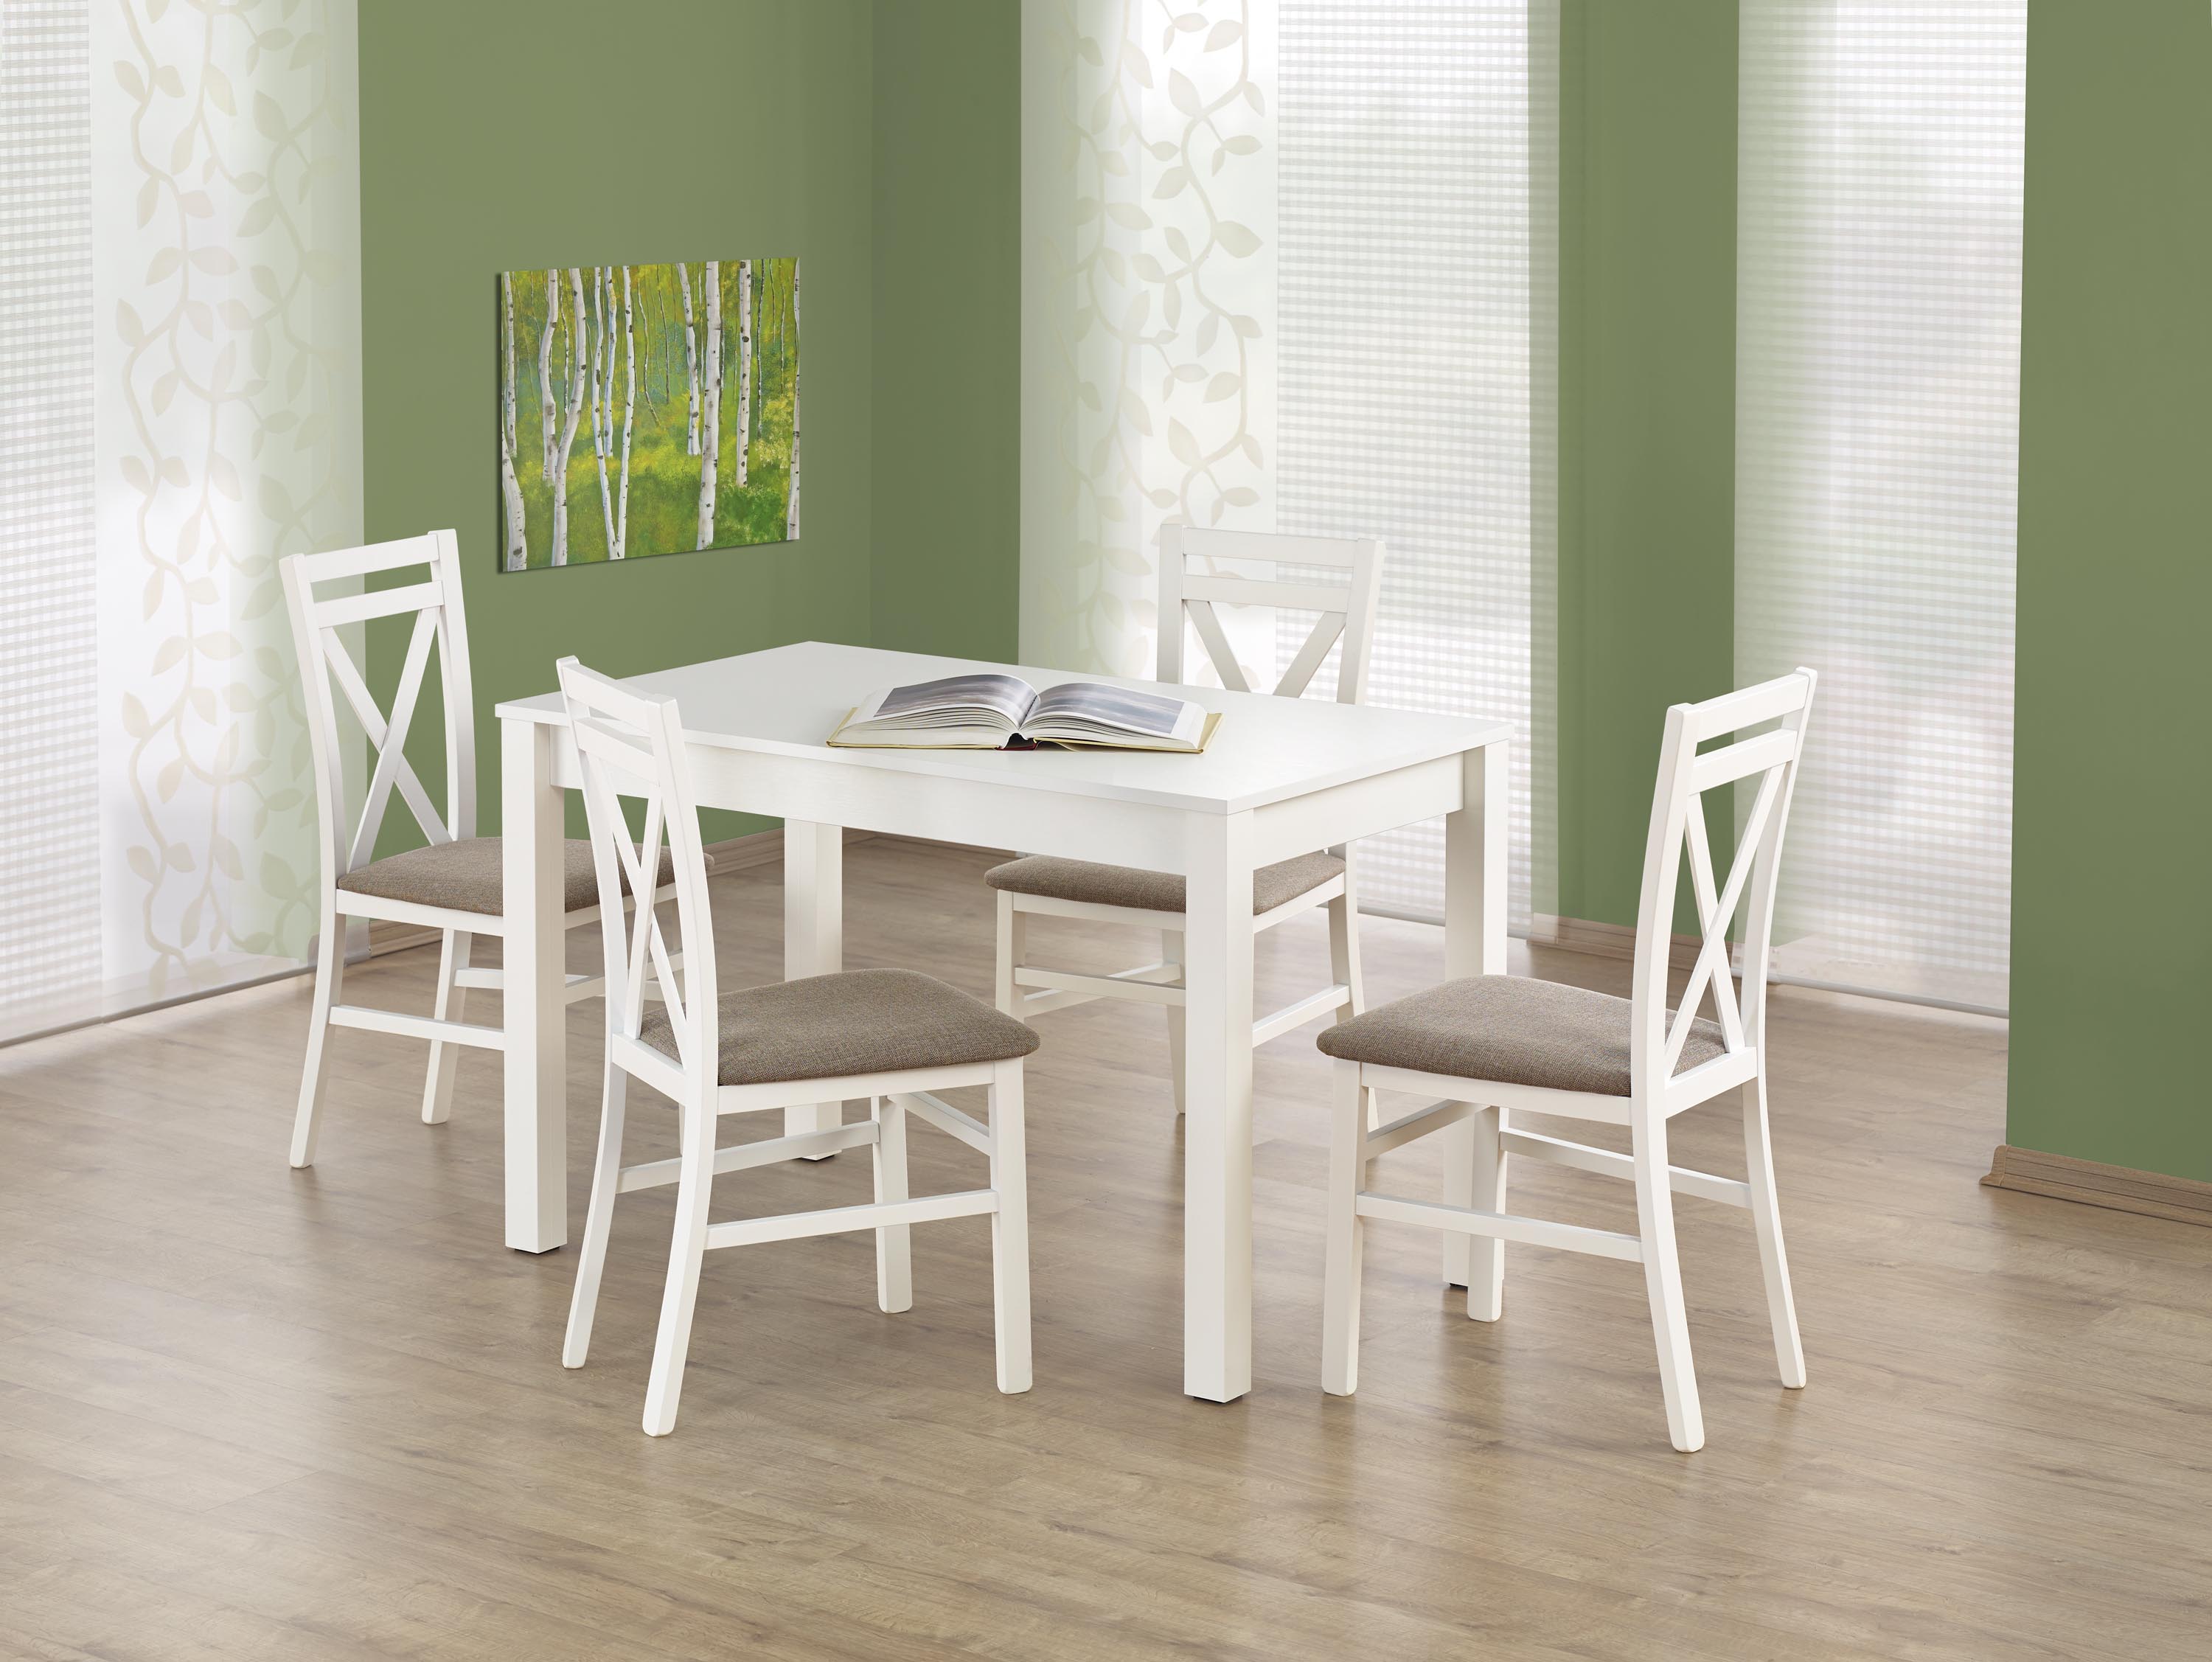 Xaver asztal - fehér stůl Xaver - Bílý